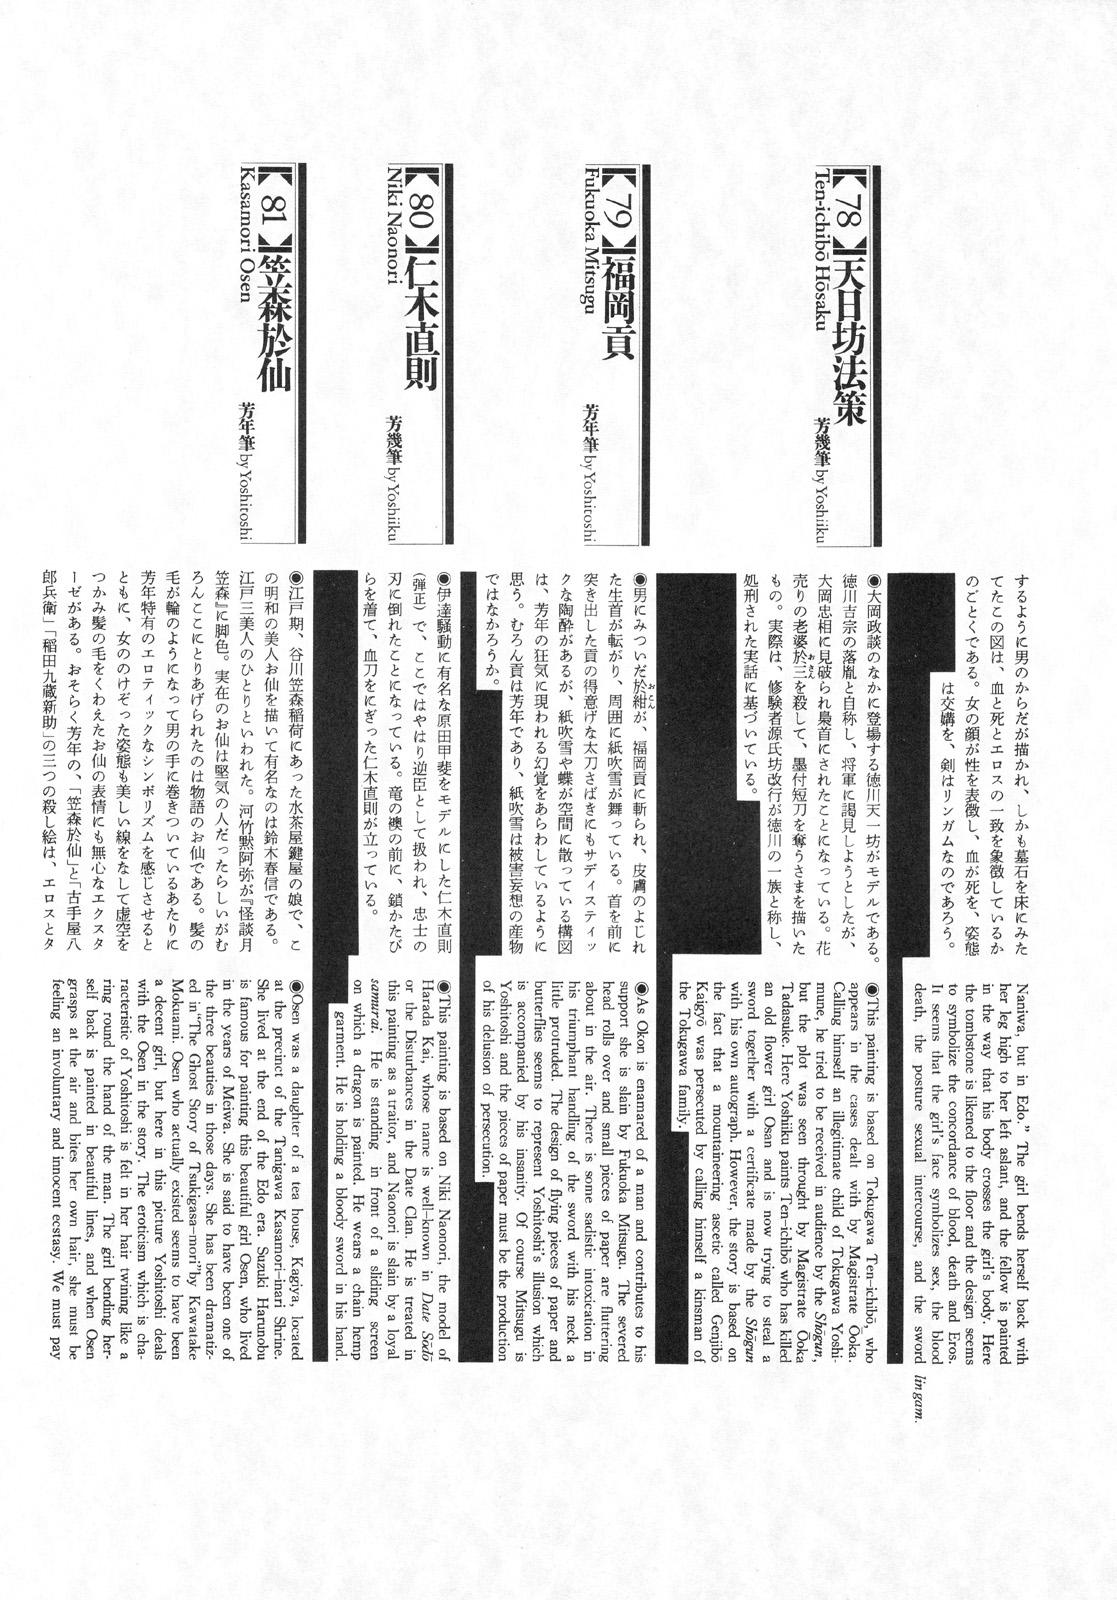 江戸昭和競作 - Bloody Ukiyo-e in 1866 & 1988 101